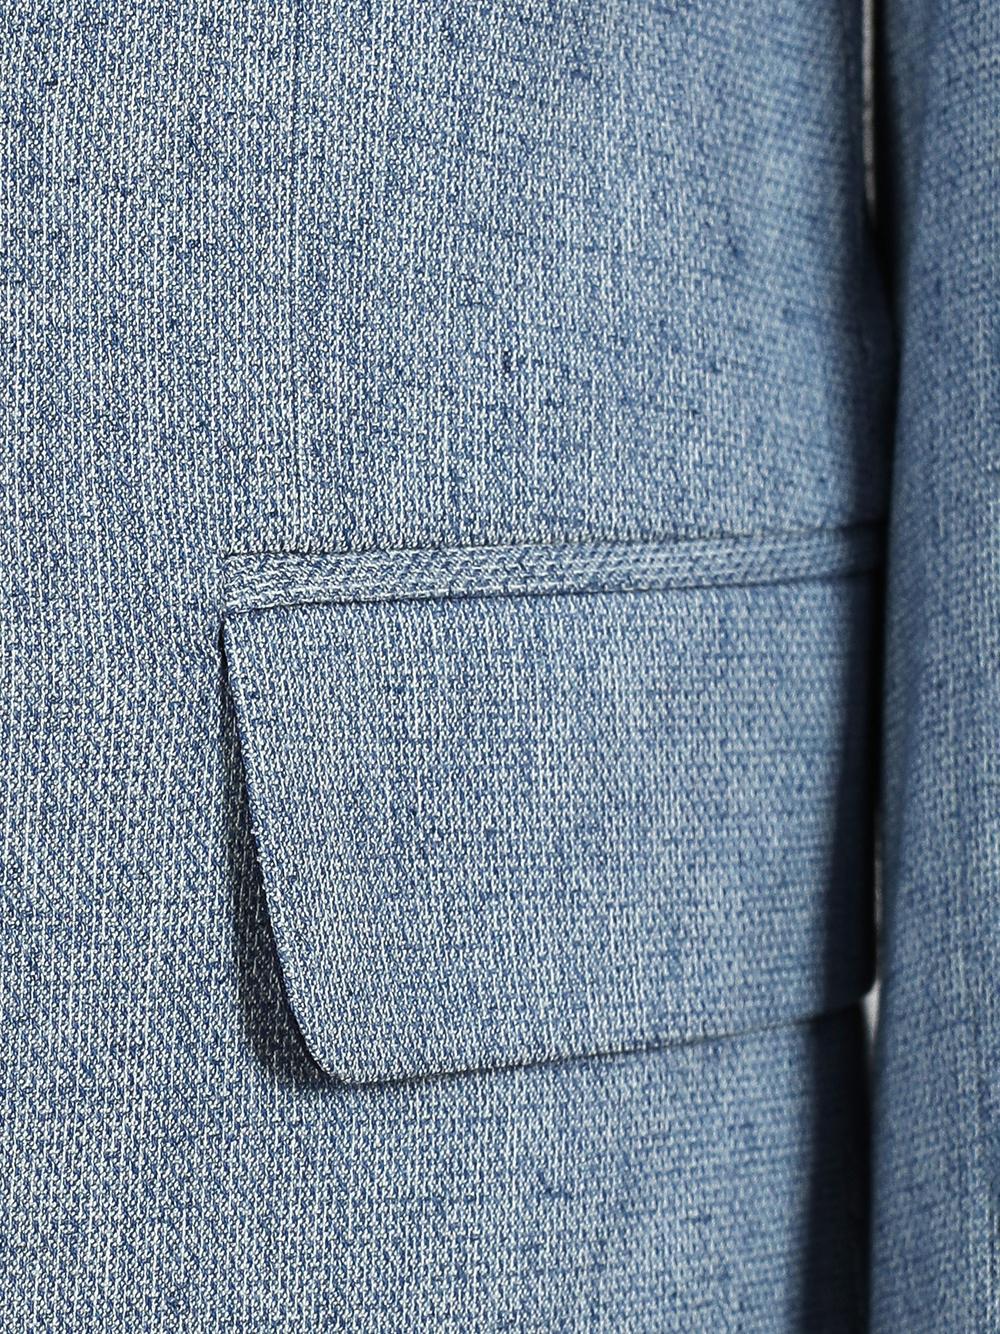 Eddie Blue Set Blazer Linen Suit